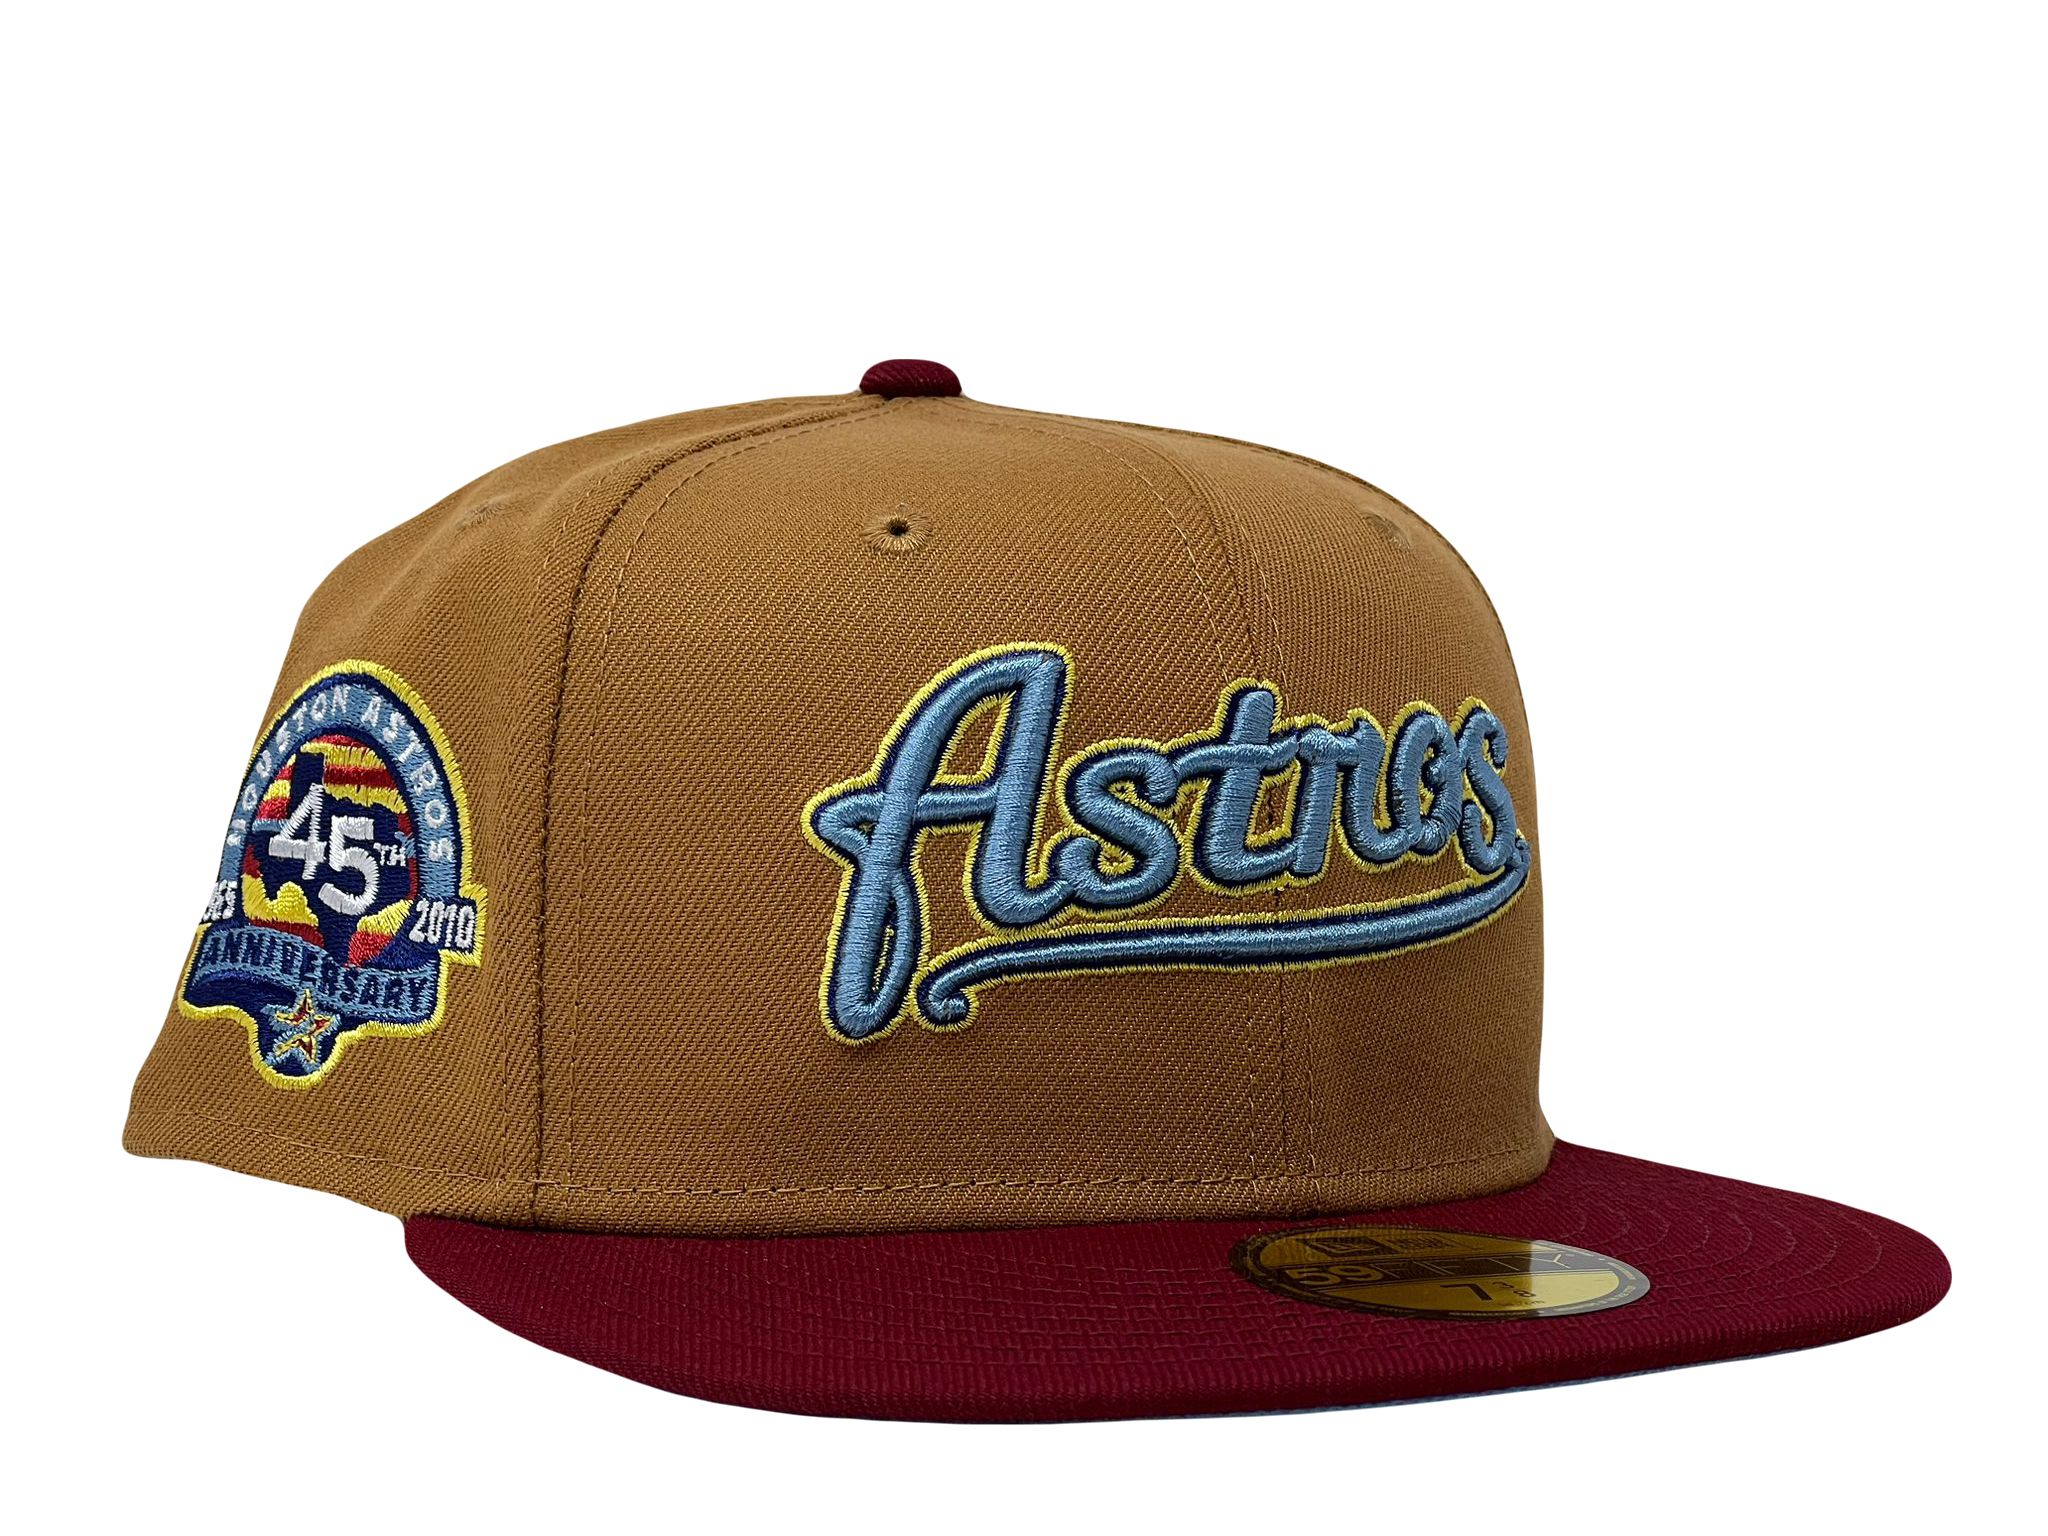 New Era 59FIFTY Retro On-Field Houston Astros Game Hat - Navy, Metallic Gold Navy/Metallic Gold / 8